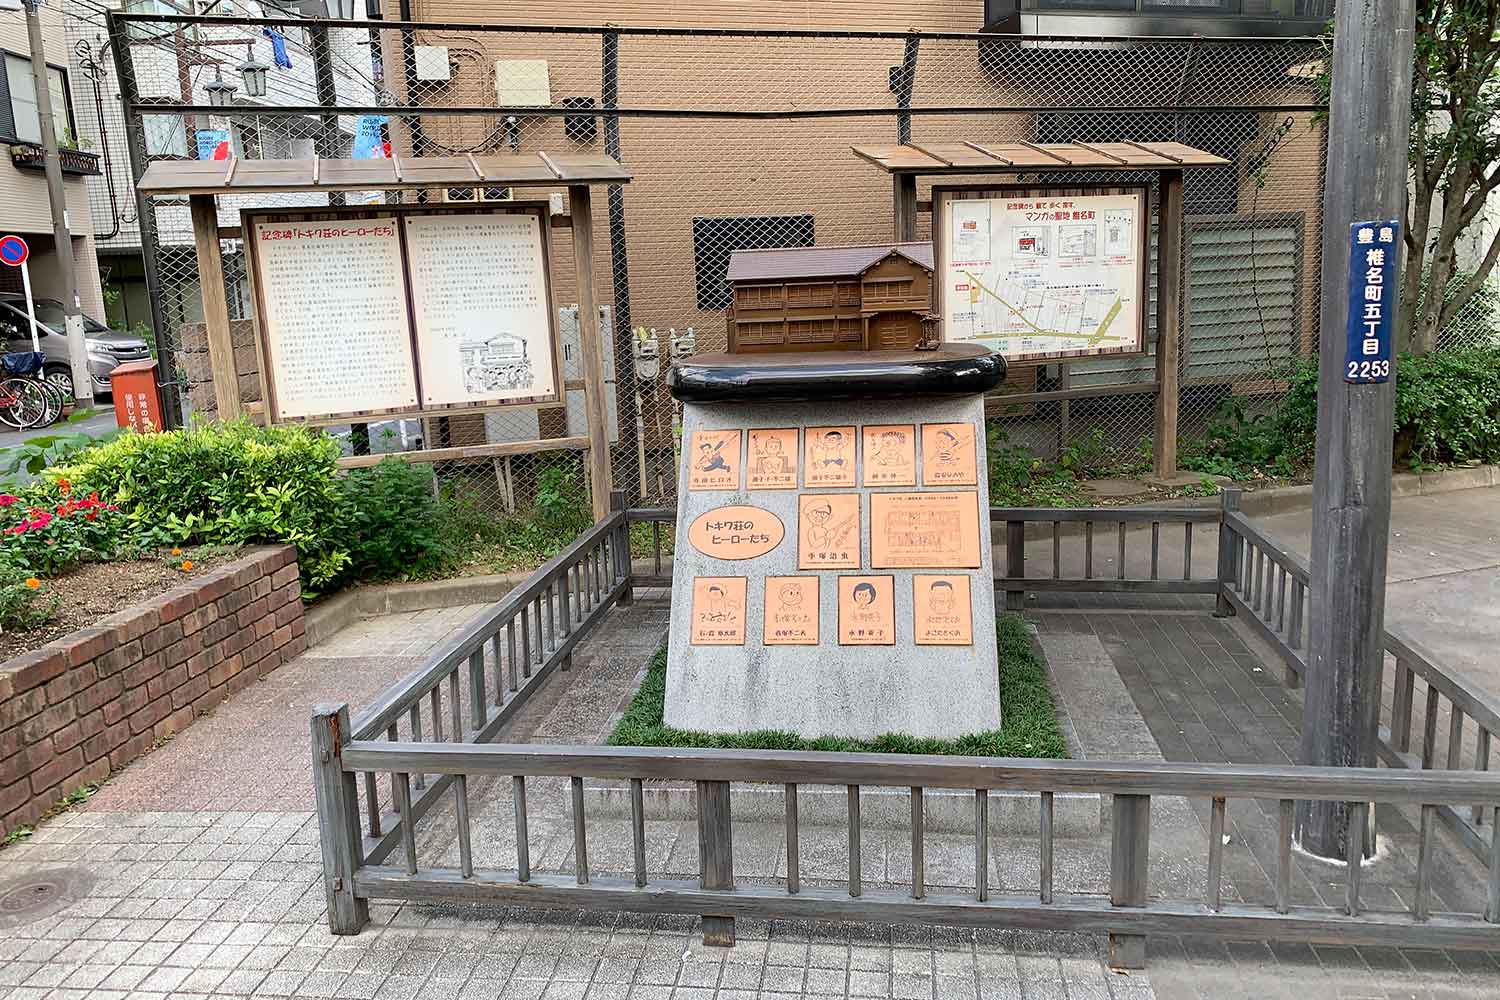 南長崎花咲公園の記念碑「トキワ荘のヒーローたち」を観に行ってみた | イケブロ